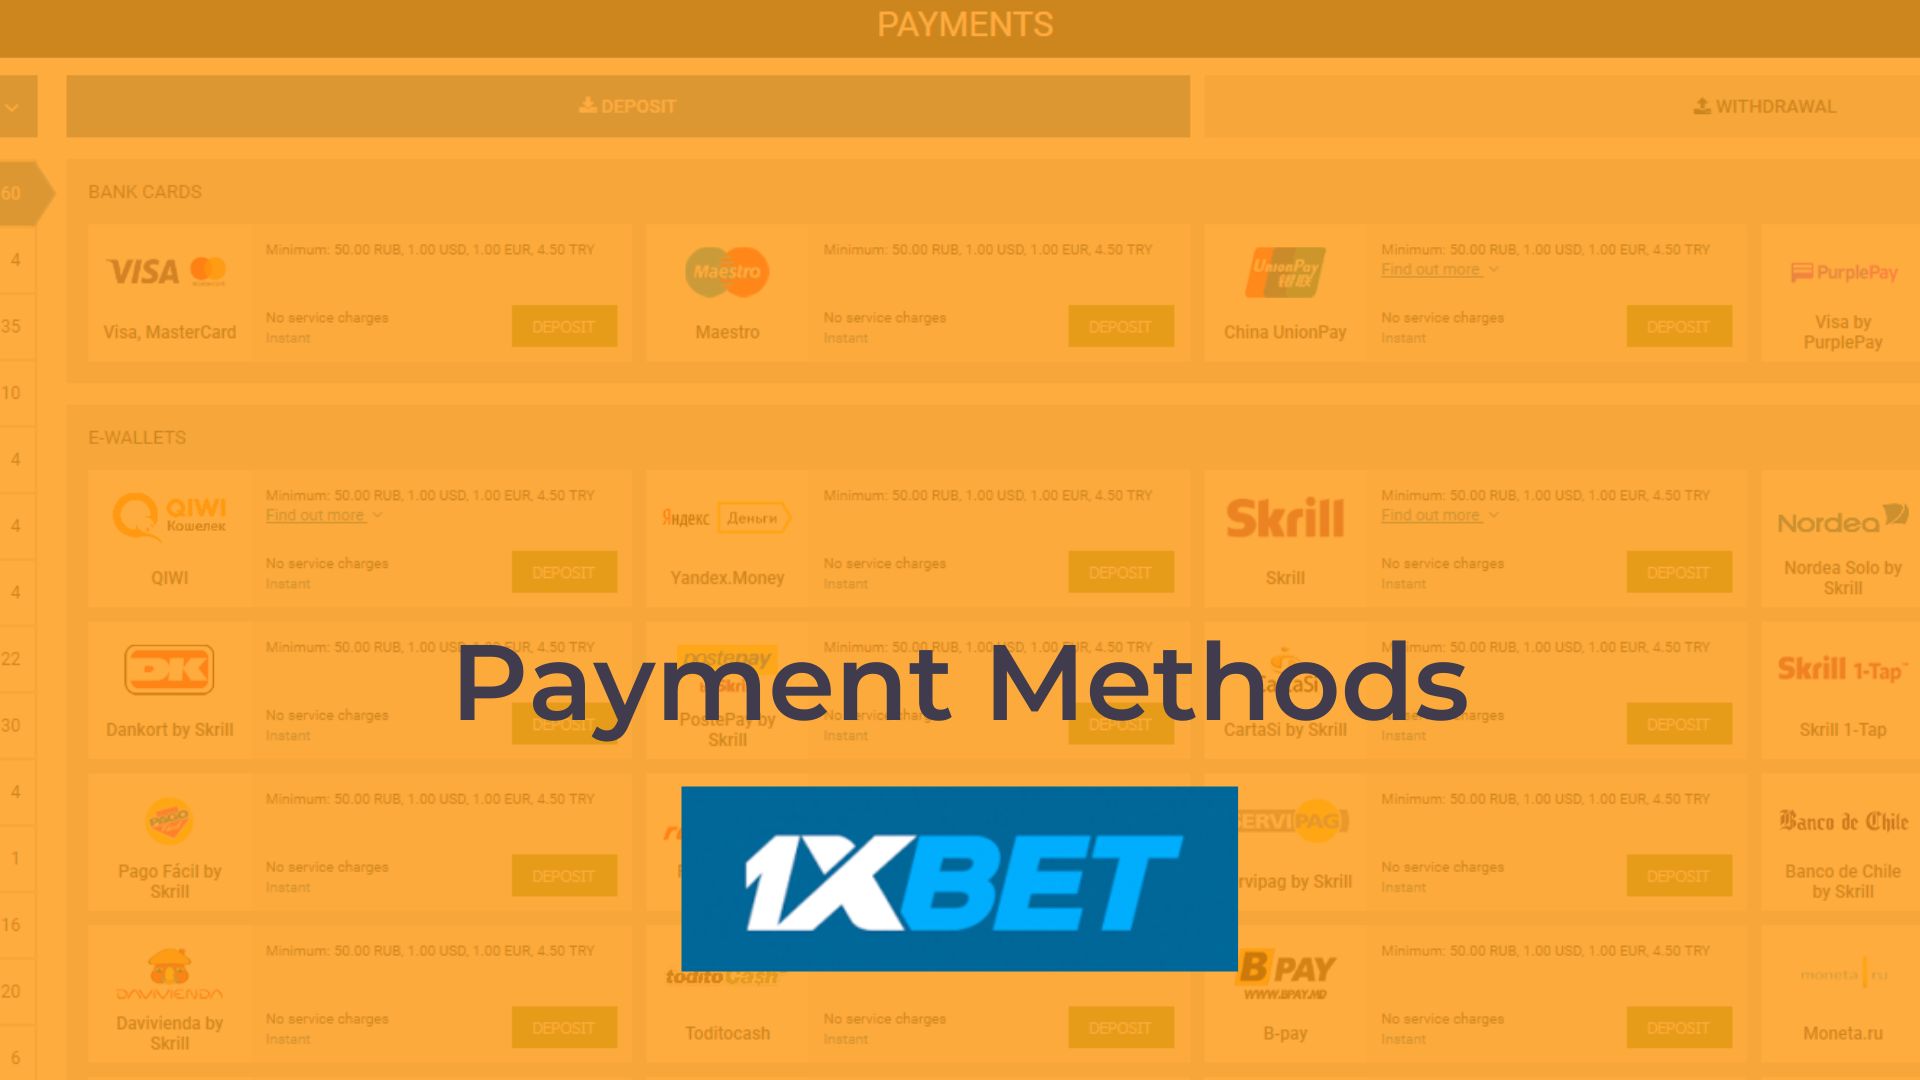 Payment Methods 1xbet
